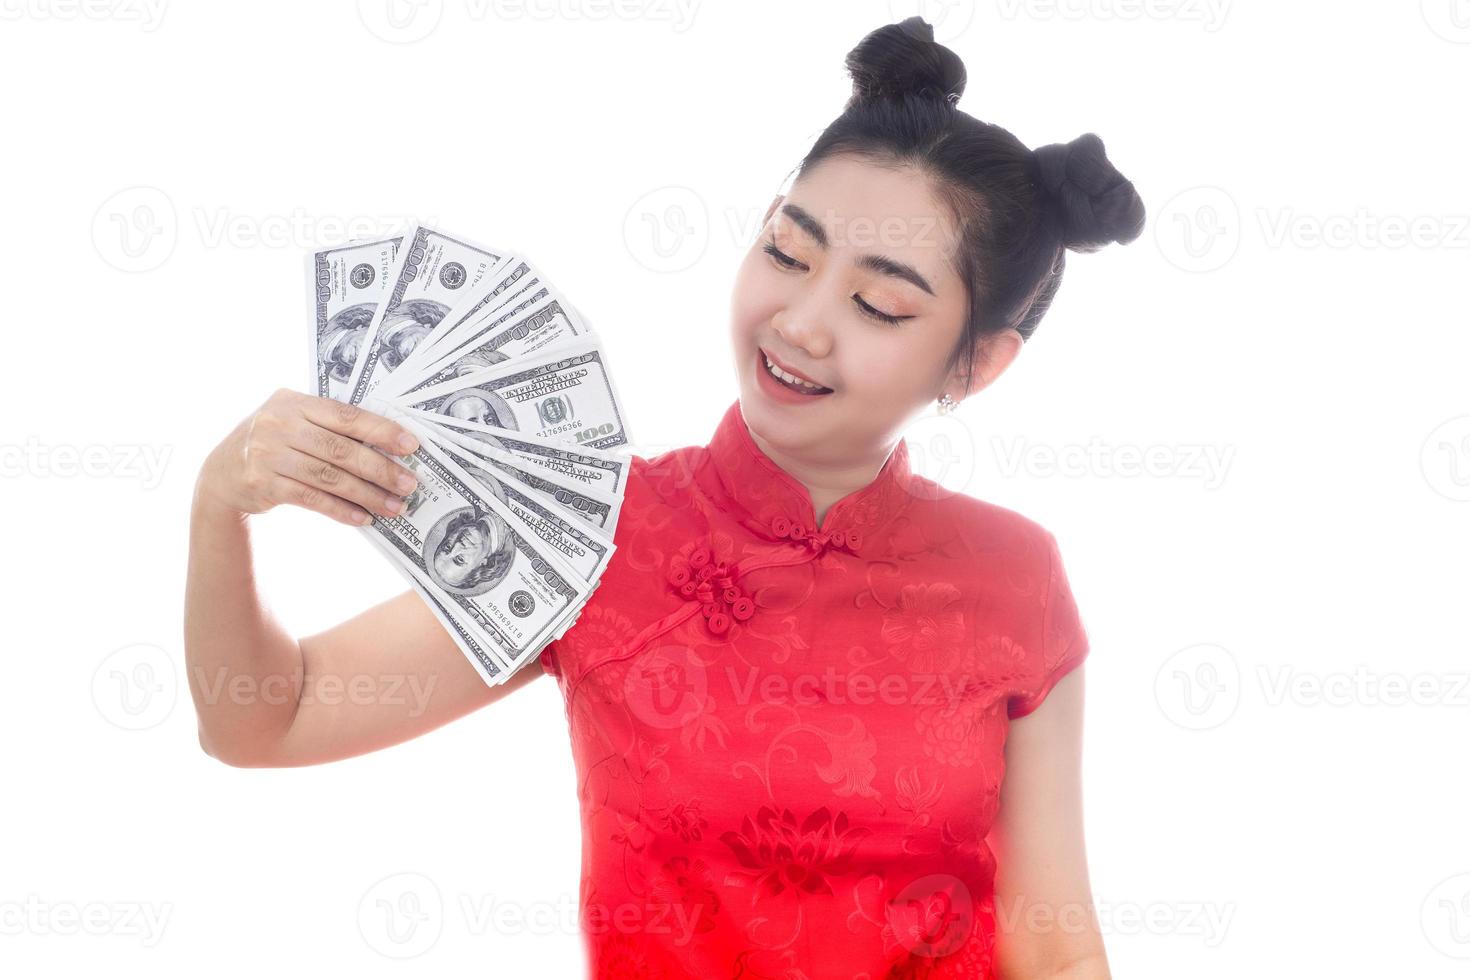 portret aziatische vrouw rode jurk traditionele cheongsam aanhouden van geld 100 Amerikaanse dollarbiljetten op witte achtergrond foto